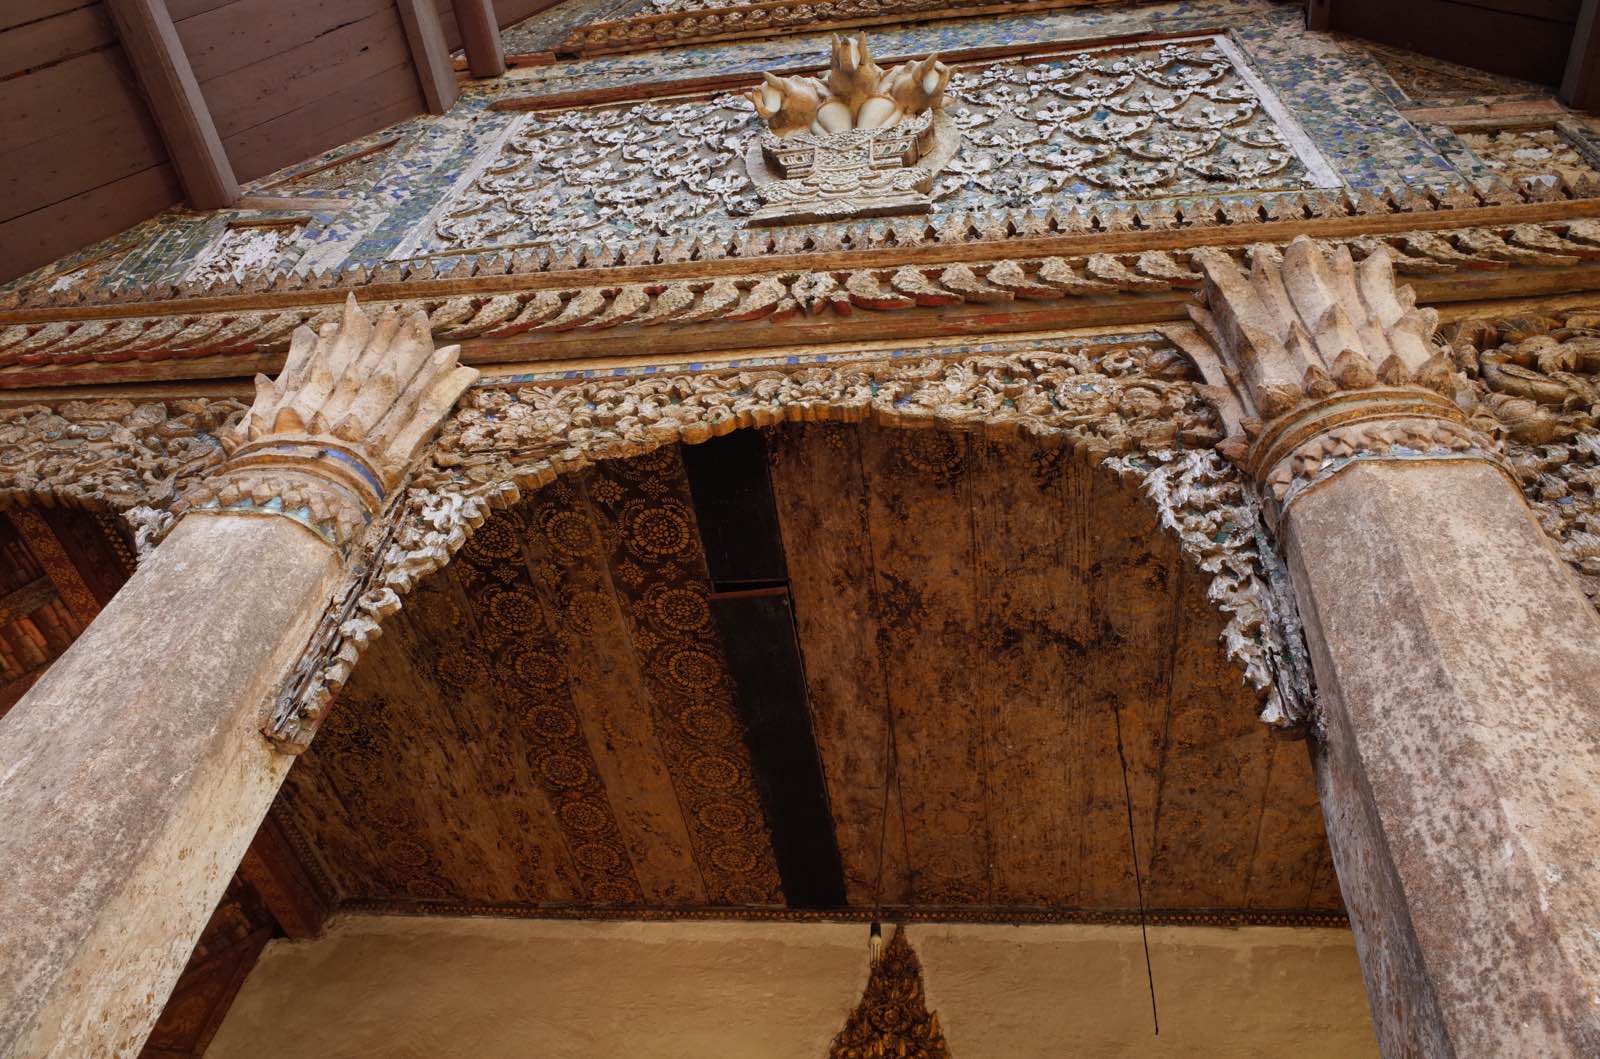 帕华寺始建于1861年，殿内有很精美的壁画，历史也已超过百年。尽管坐落